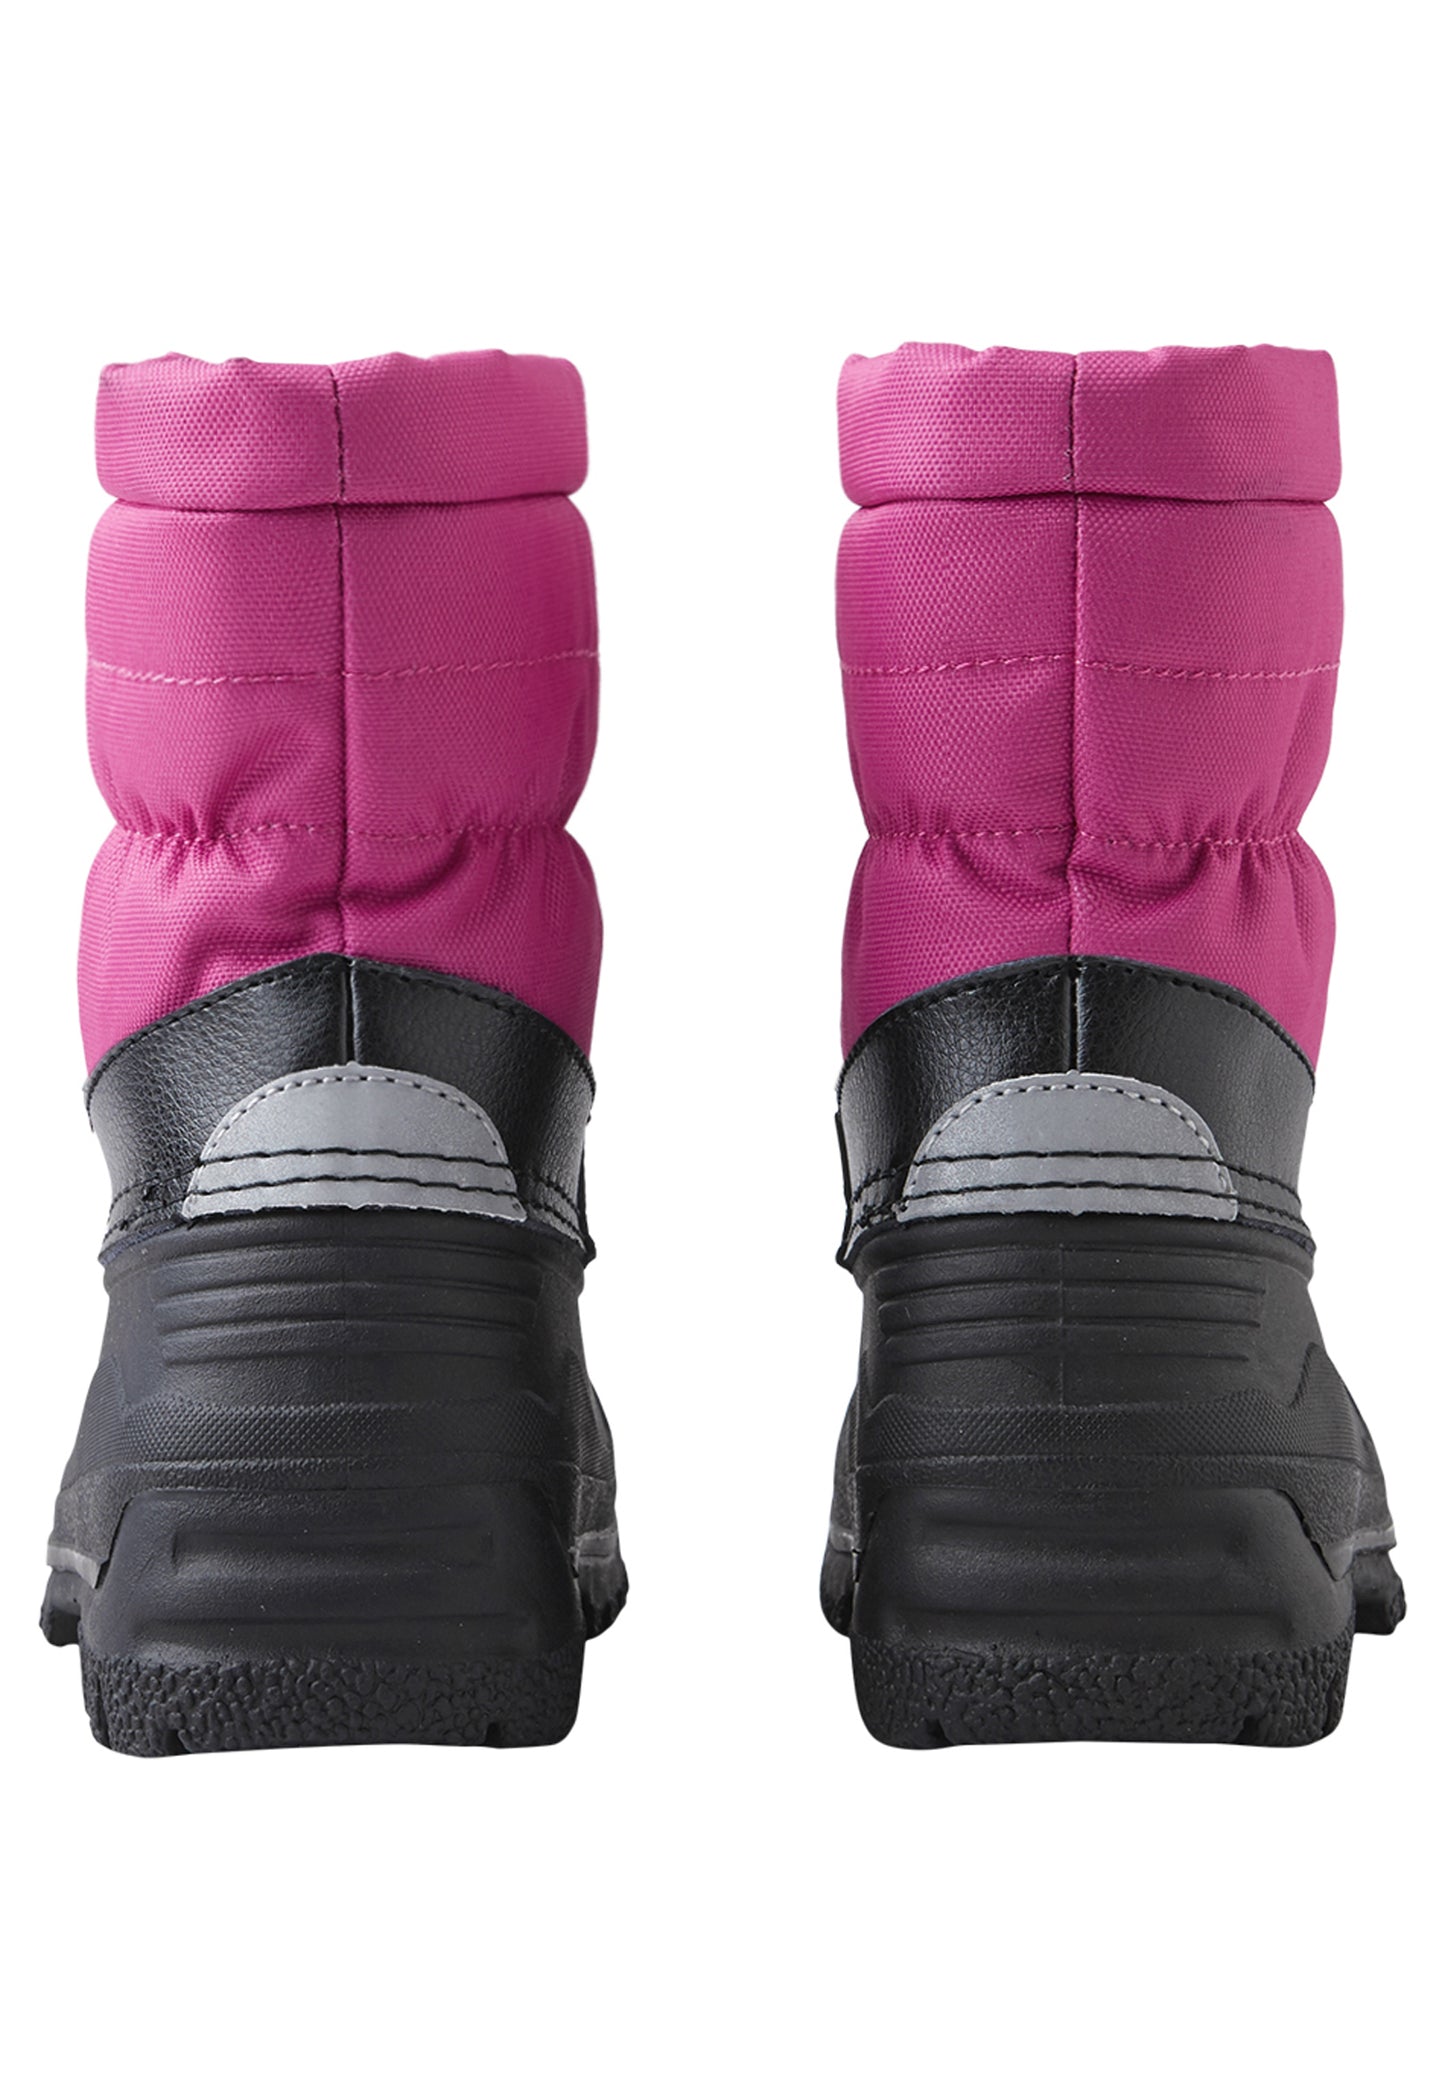 Reima Winter-Stiefel <br>Nefar <br> ideal für Schulweg und Alltag <br>Gr. 20 bis 35<br> warm und leicht<br> Galosche unten wasserdicht